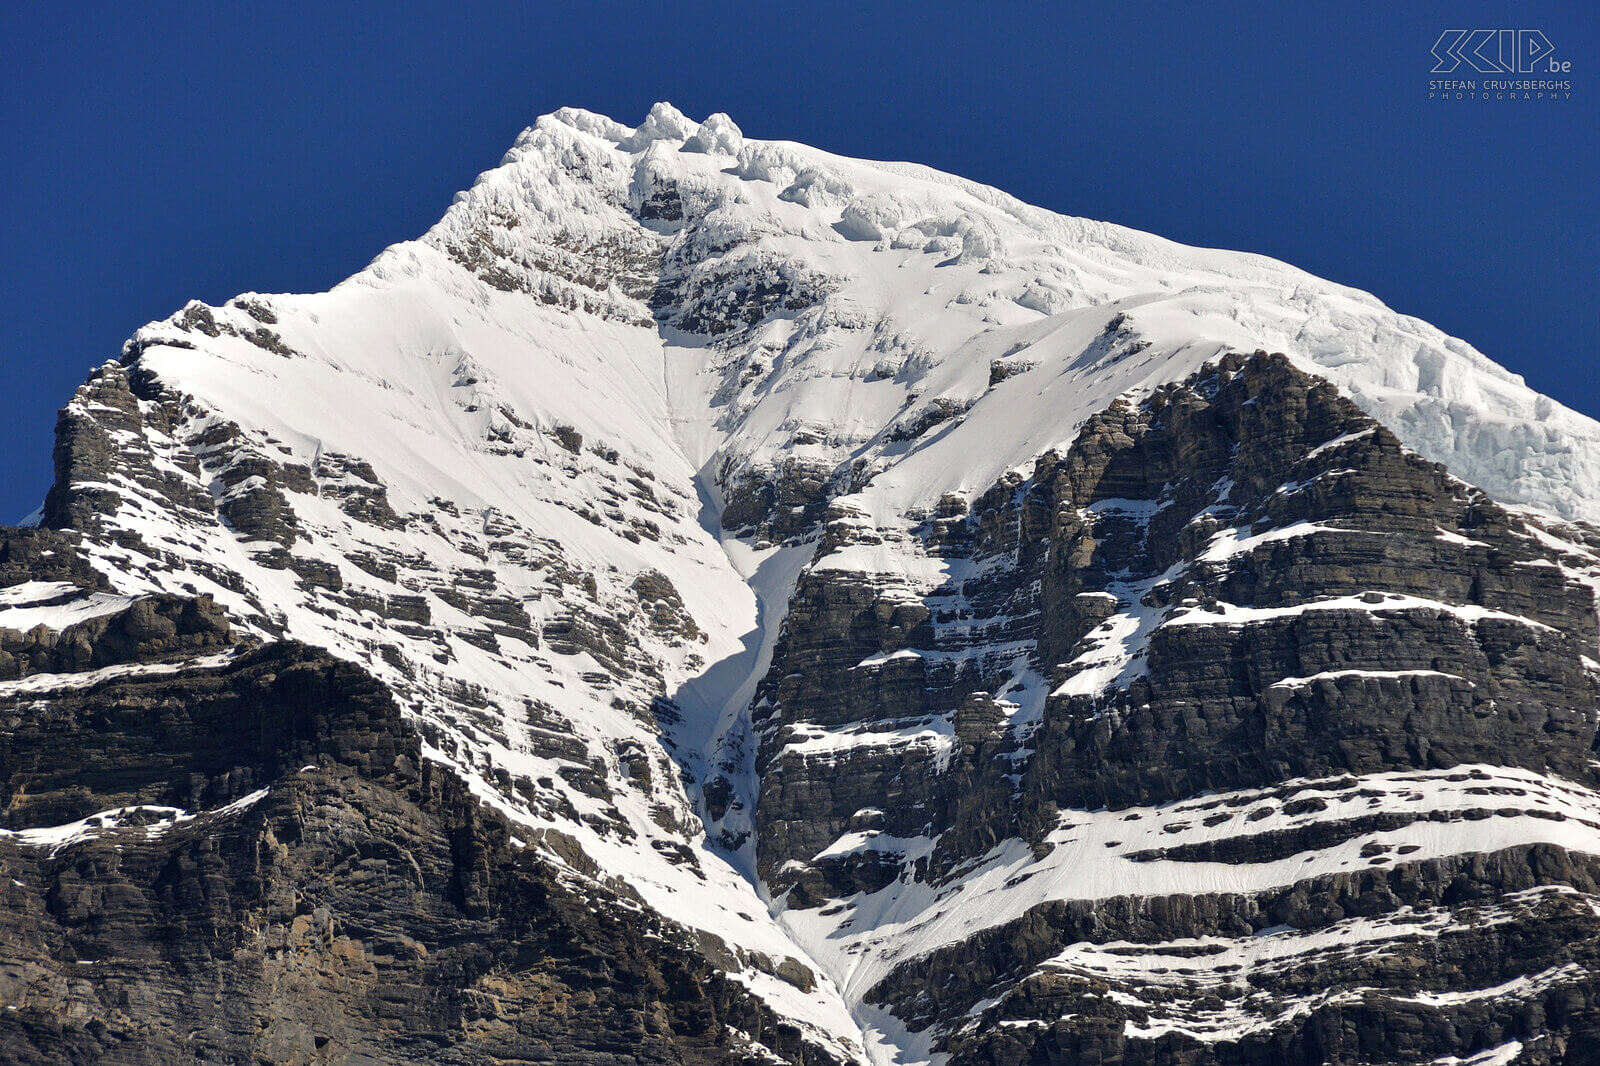 Mount Robson De gletsjers op de top van Mount Robson (3800m) Stefan Cruysberghs